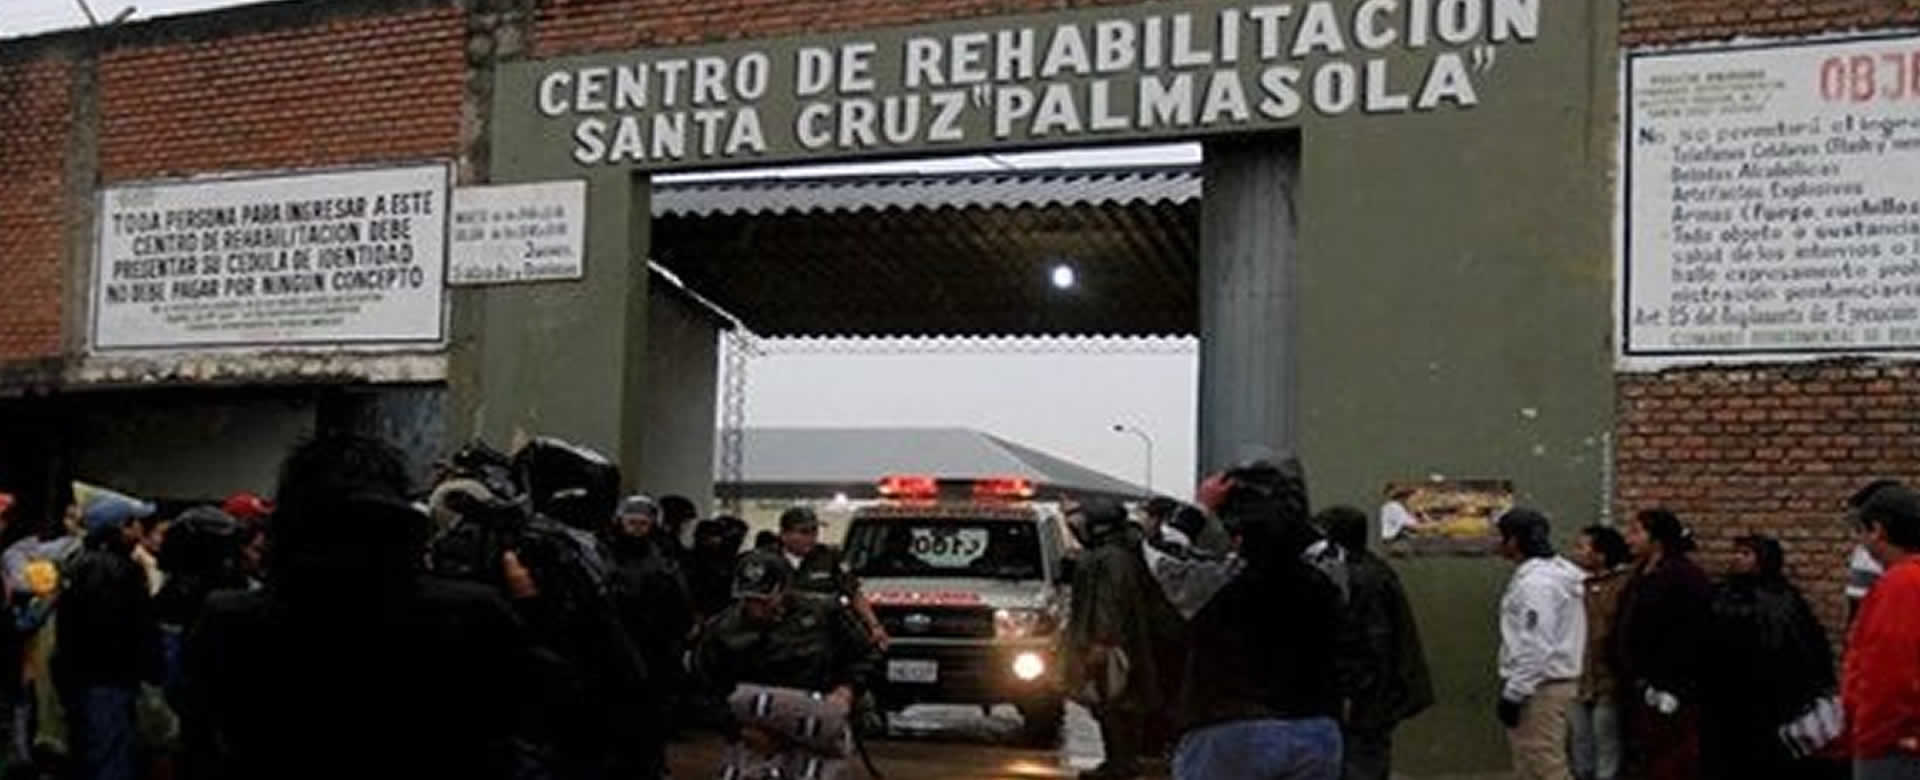 Entrada principal del Penitenciario "Palmasola" en Santa Cruz, Bolivia.